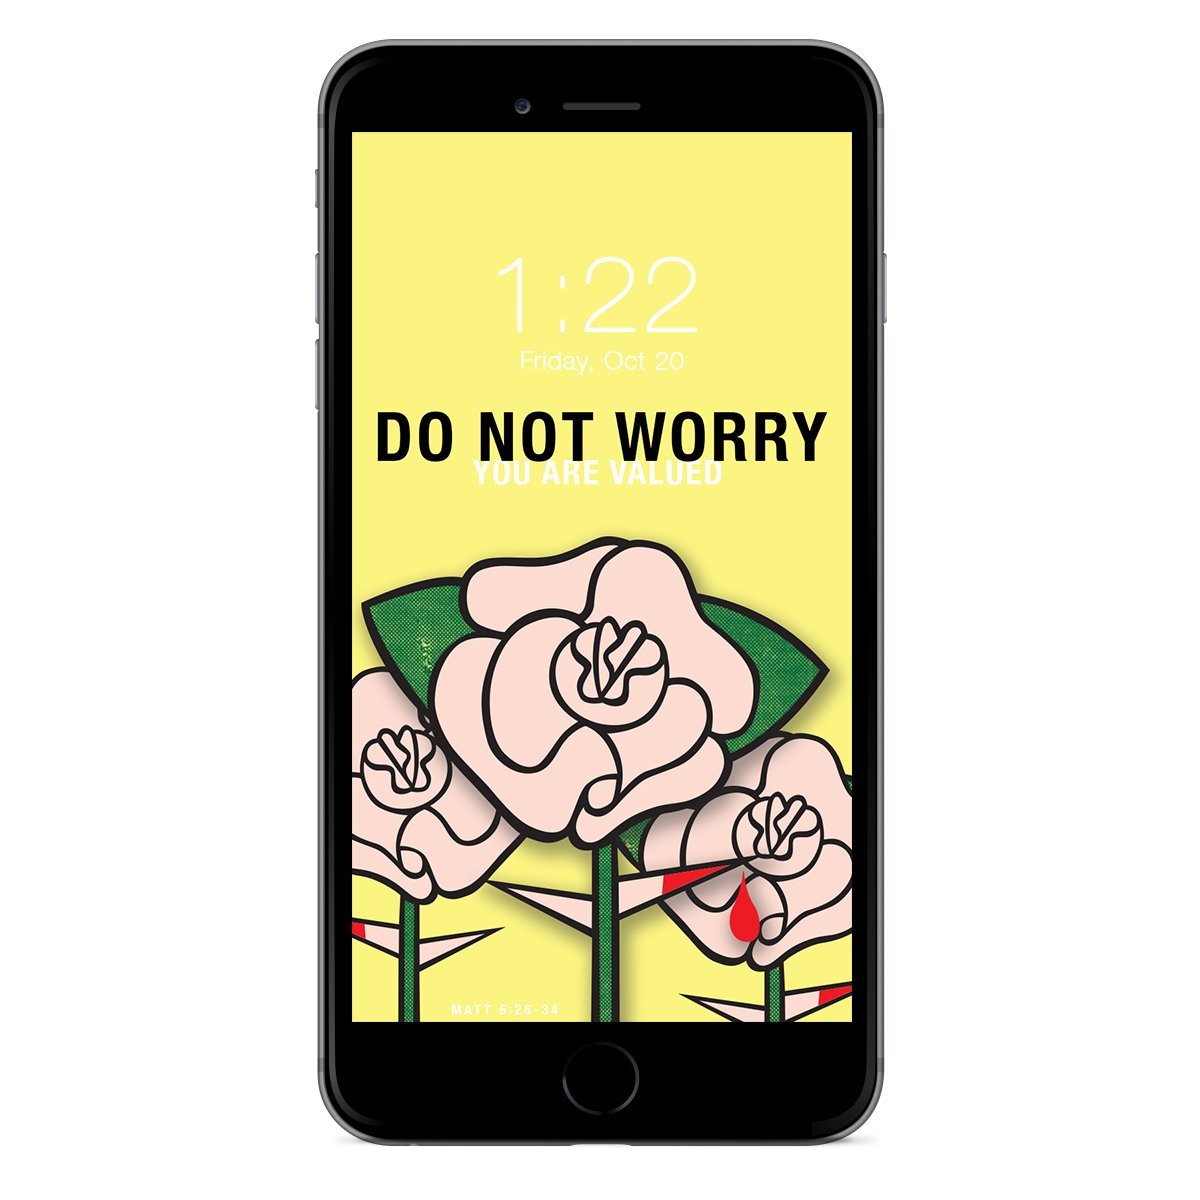 CXXII "Do Not Worry" Phone Wallpaper